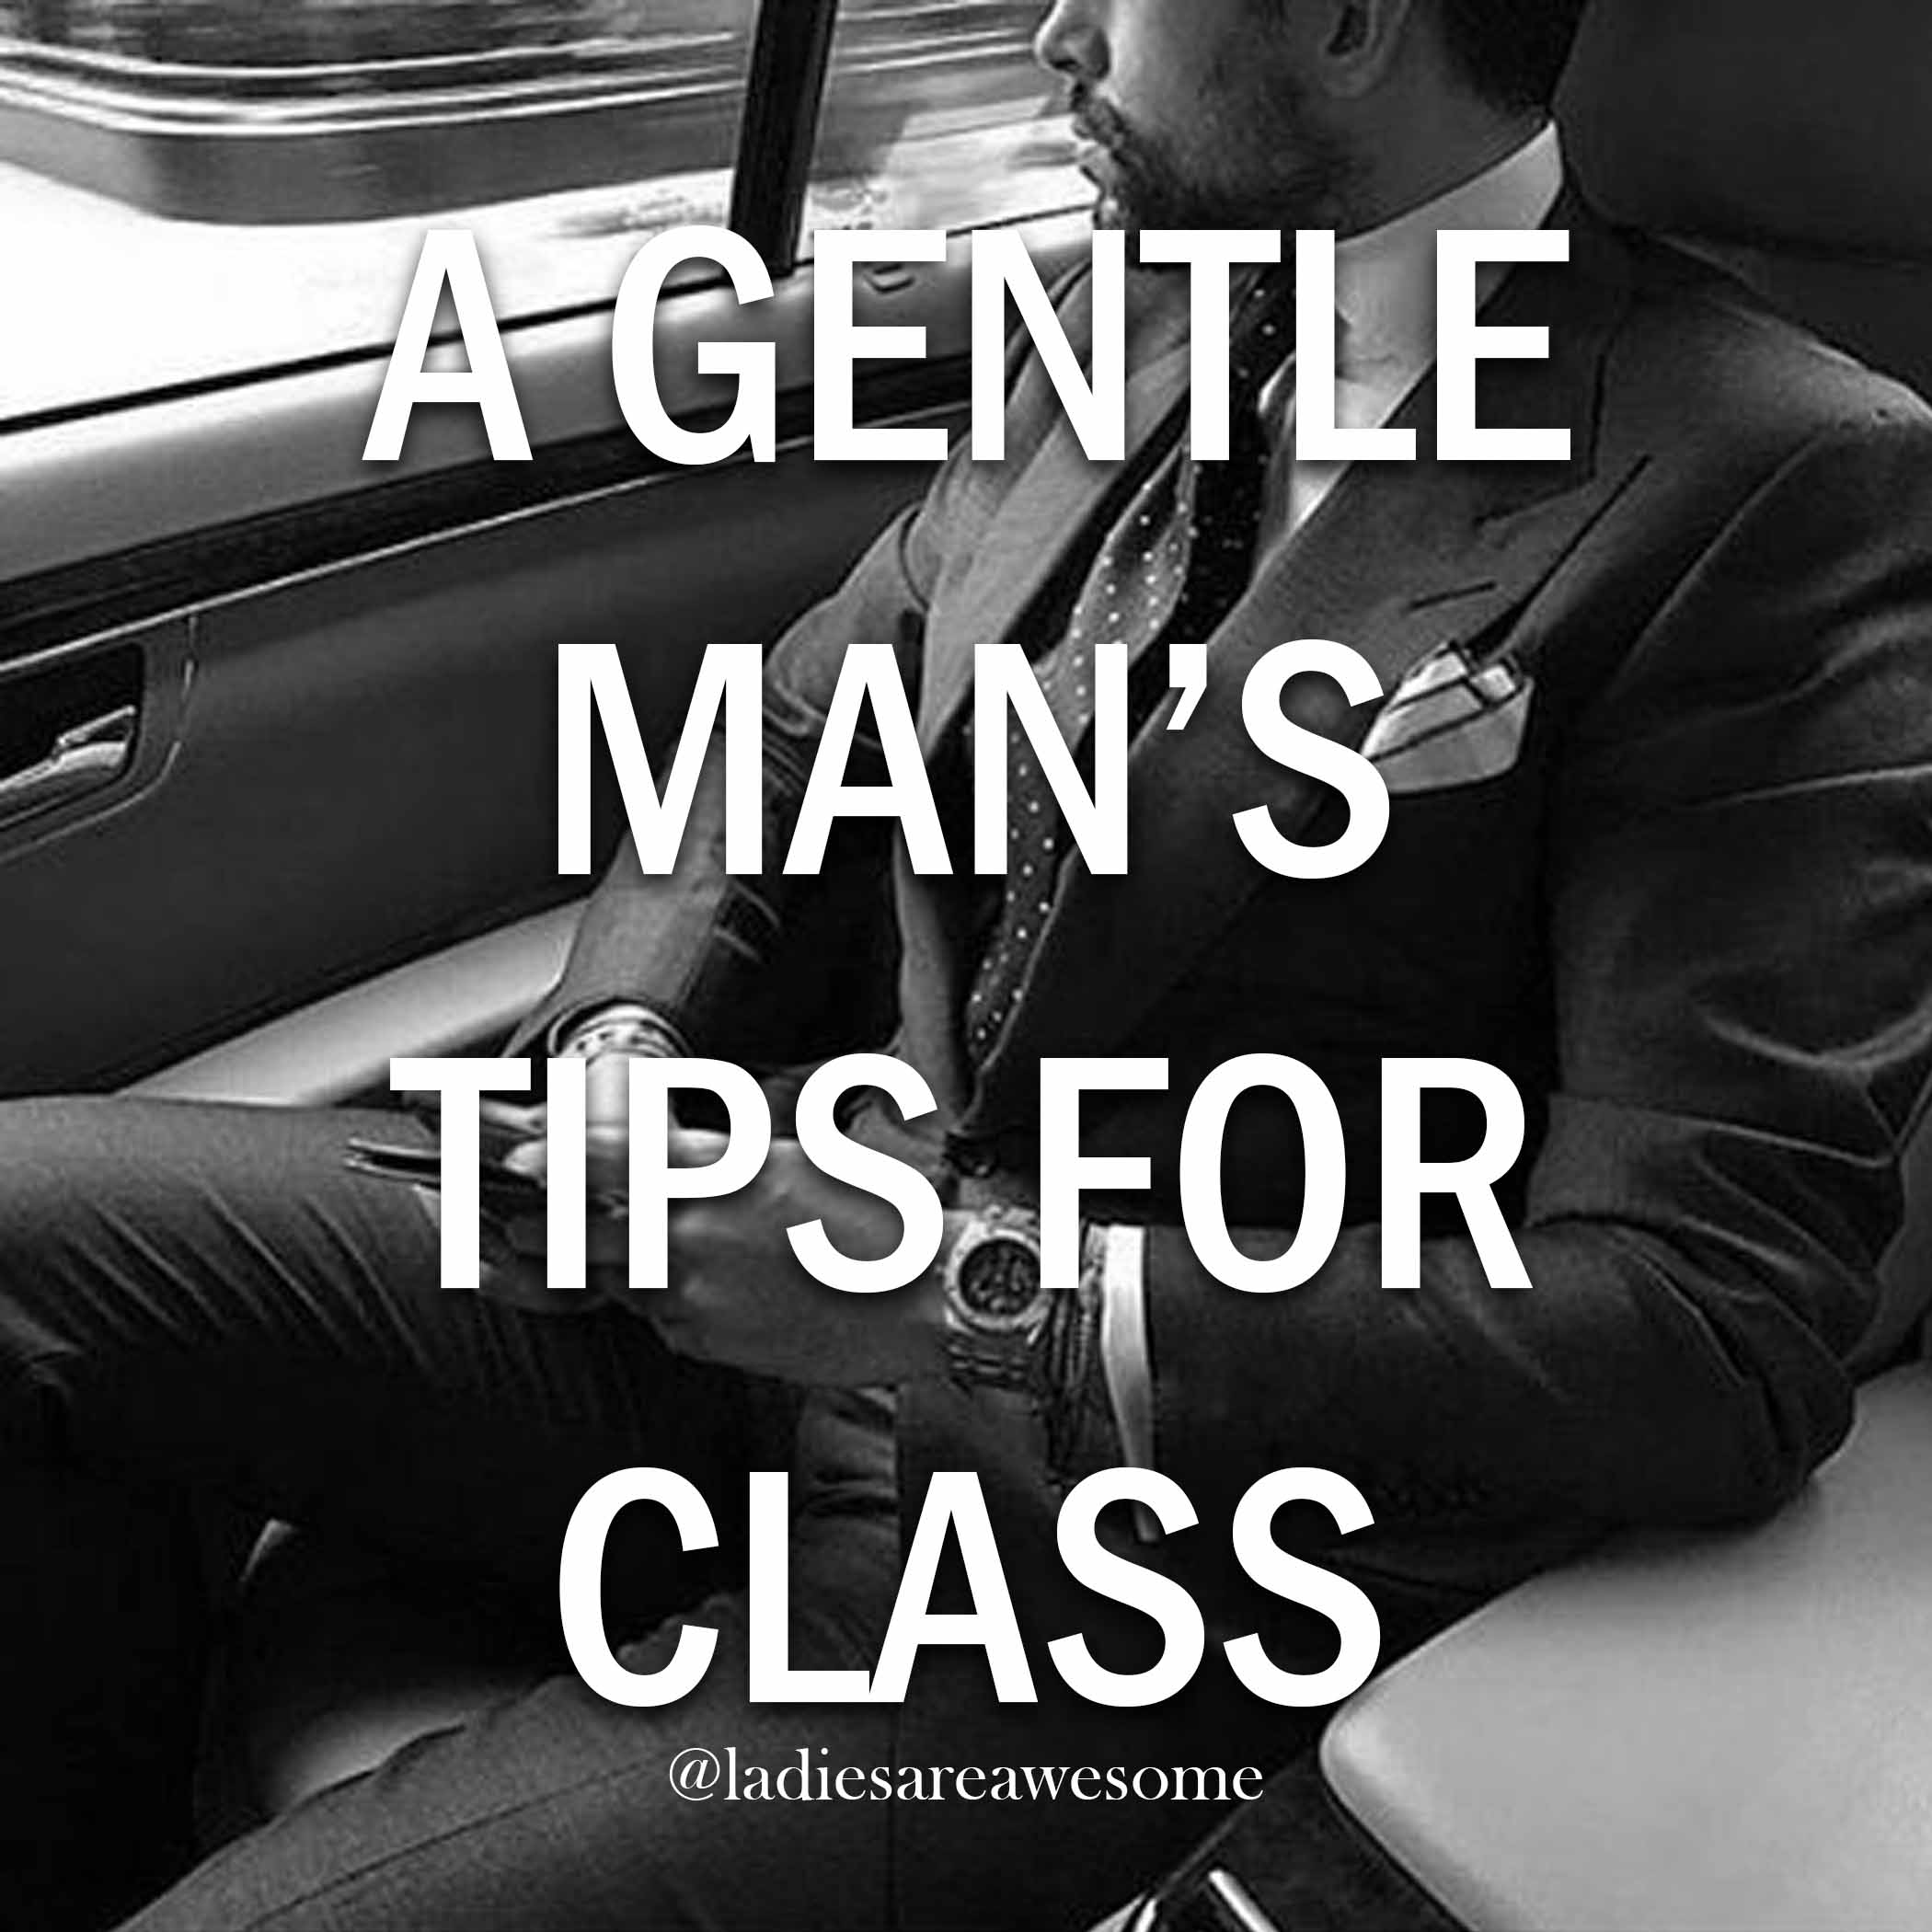 gentleman